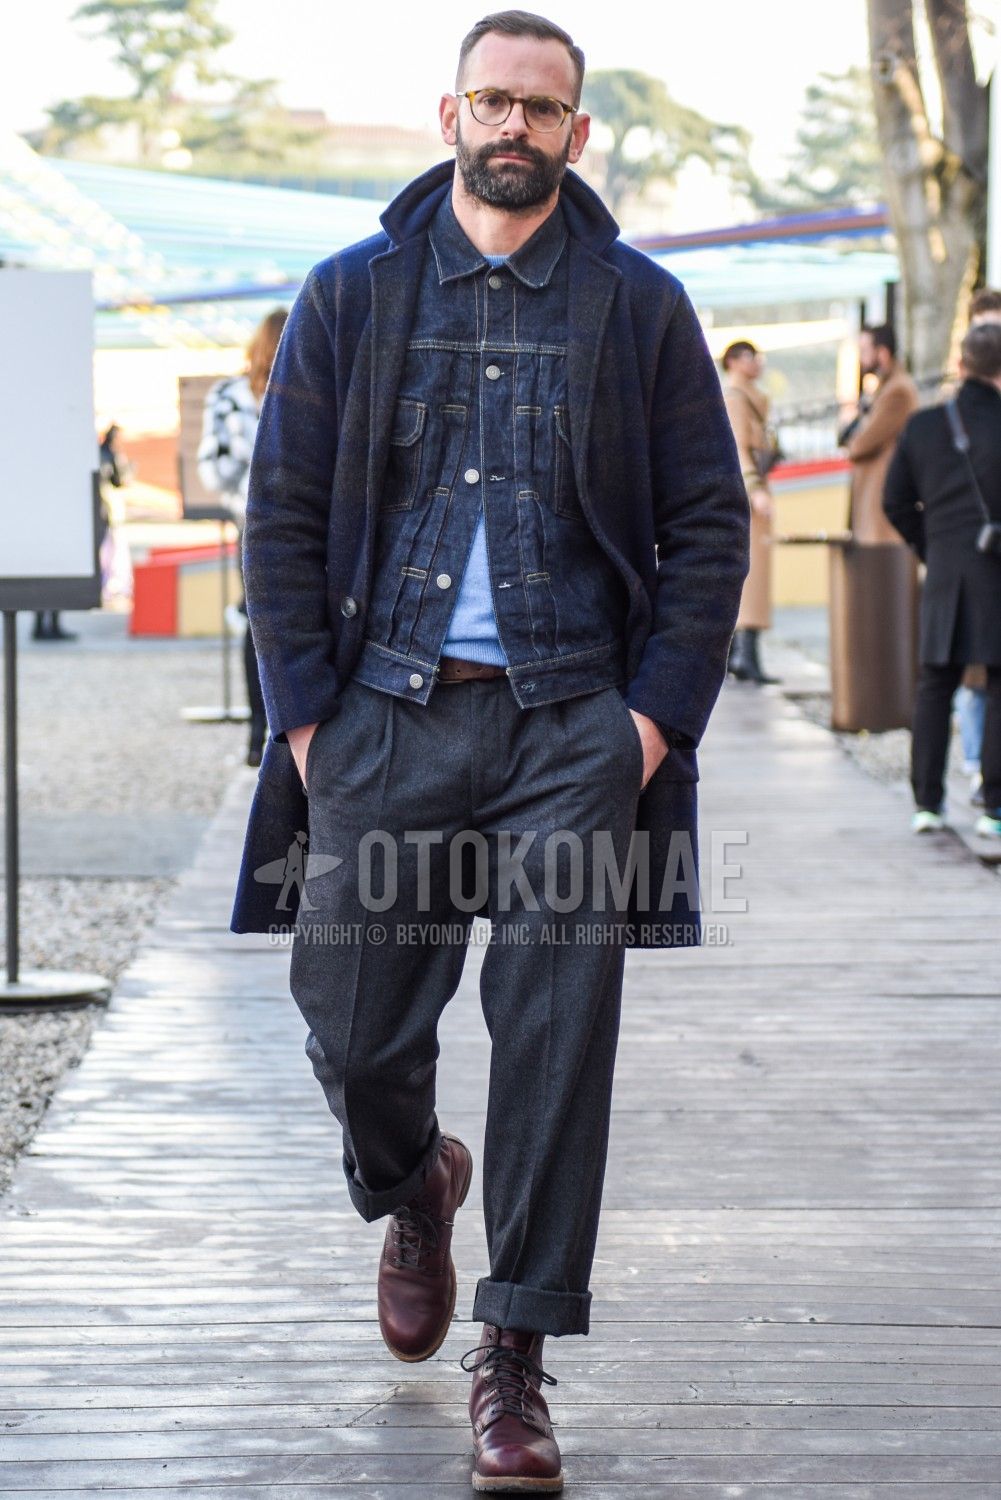 メンズ冬パンツのおすすめ5選 メンズファッションメディア Otokomaeotokomae 男前研究所